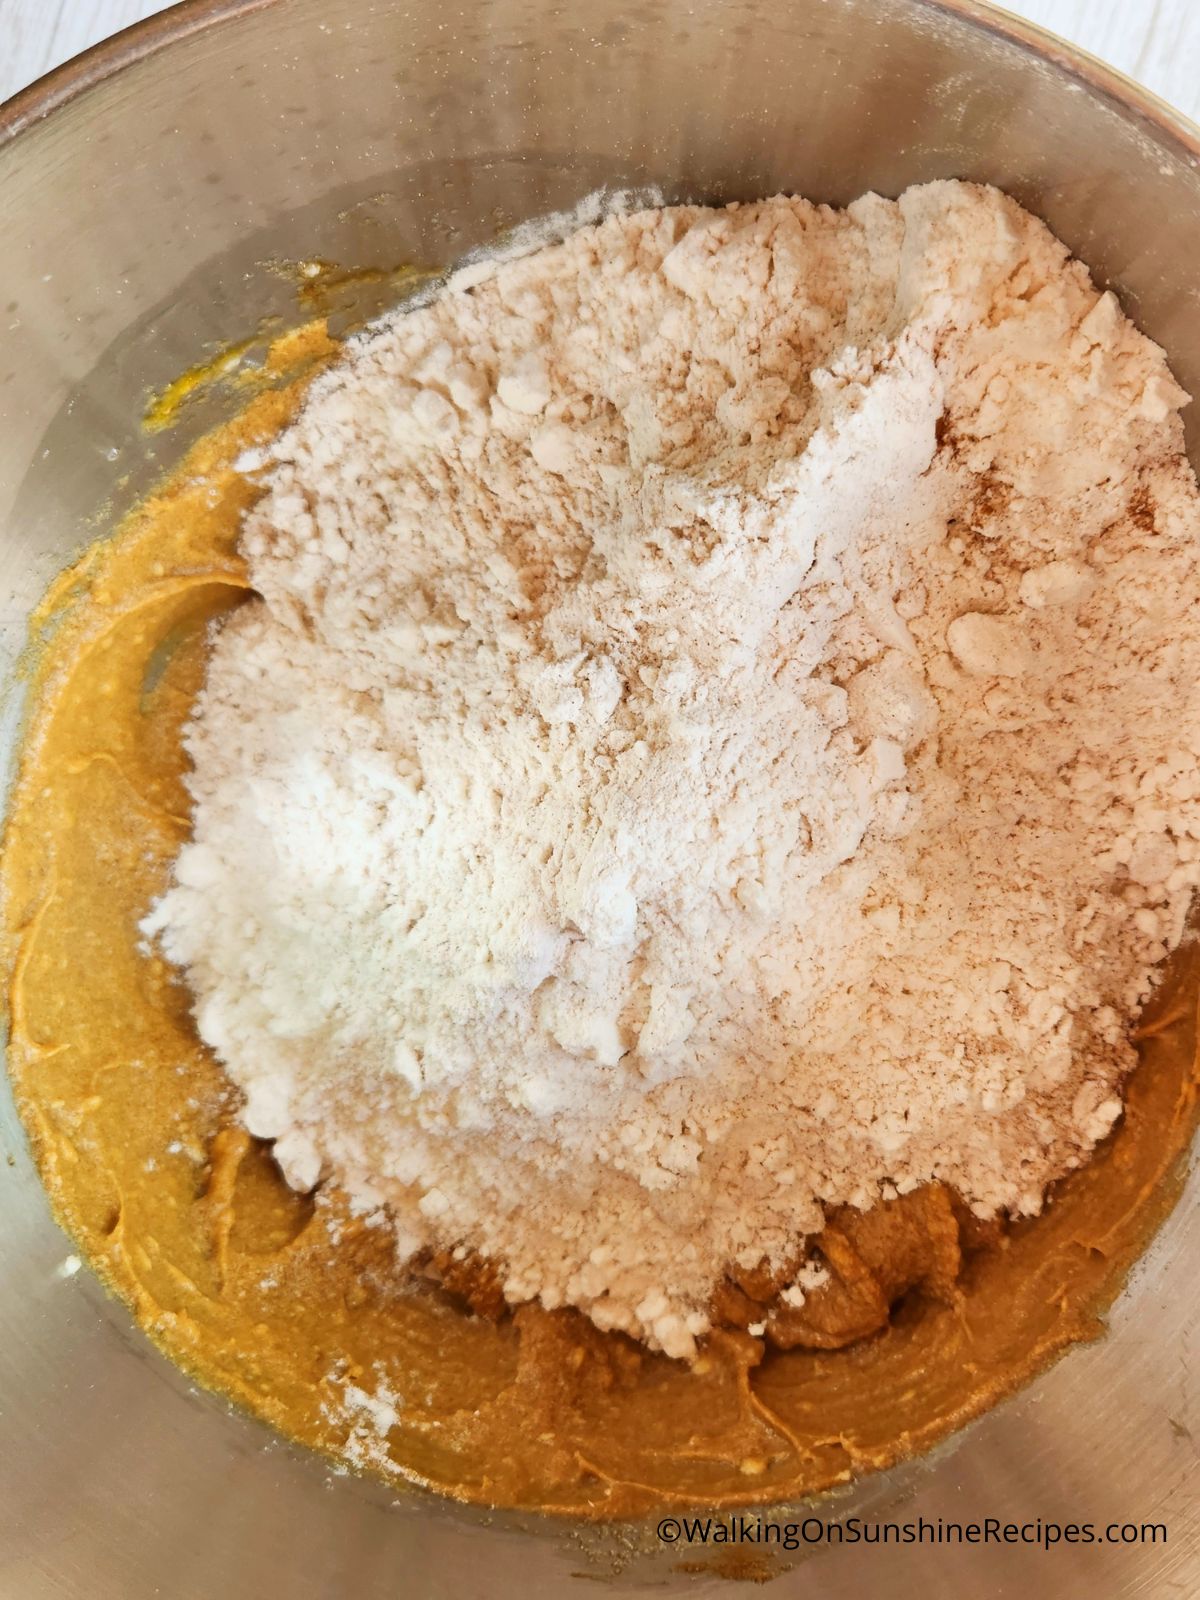 Add flour mixture to wet ingredients.